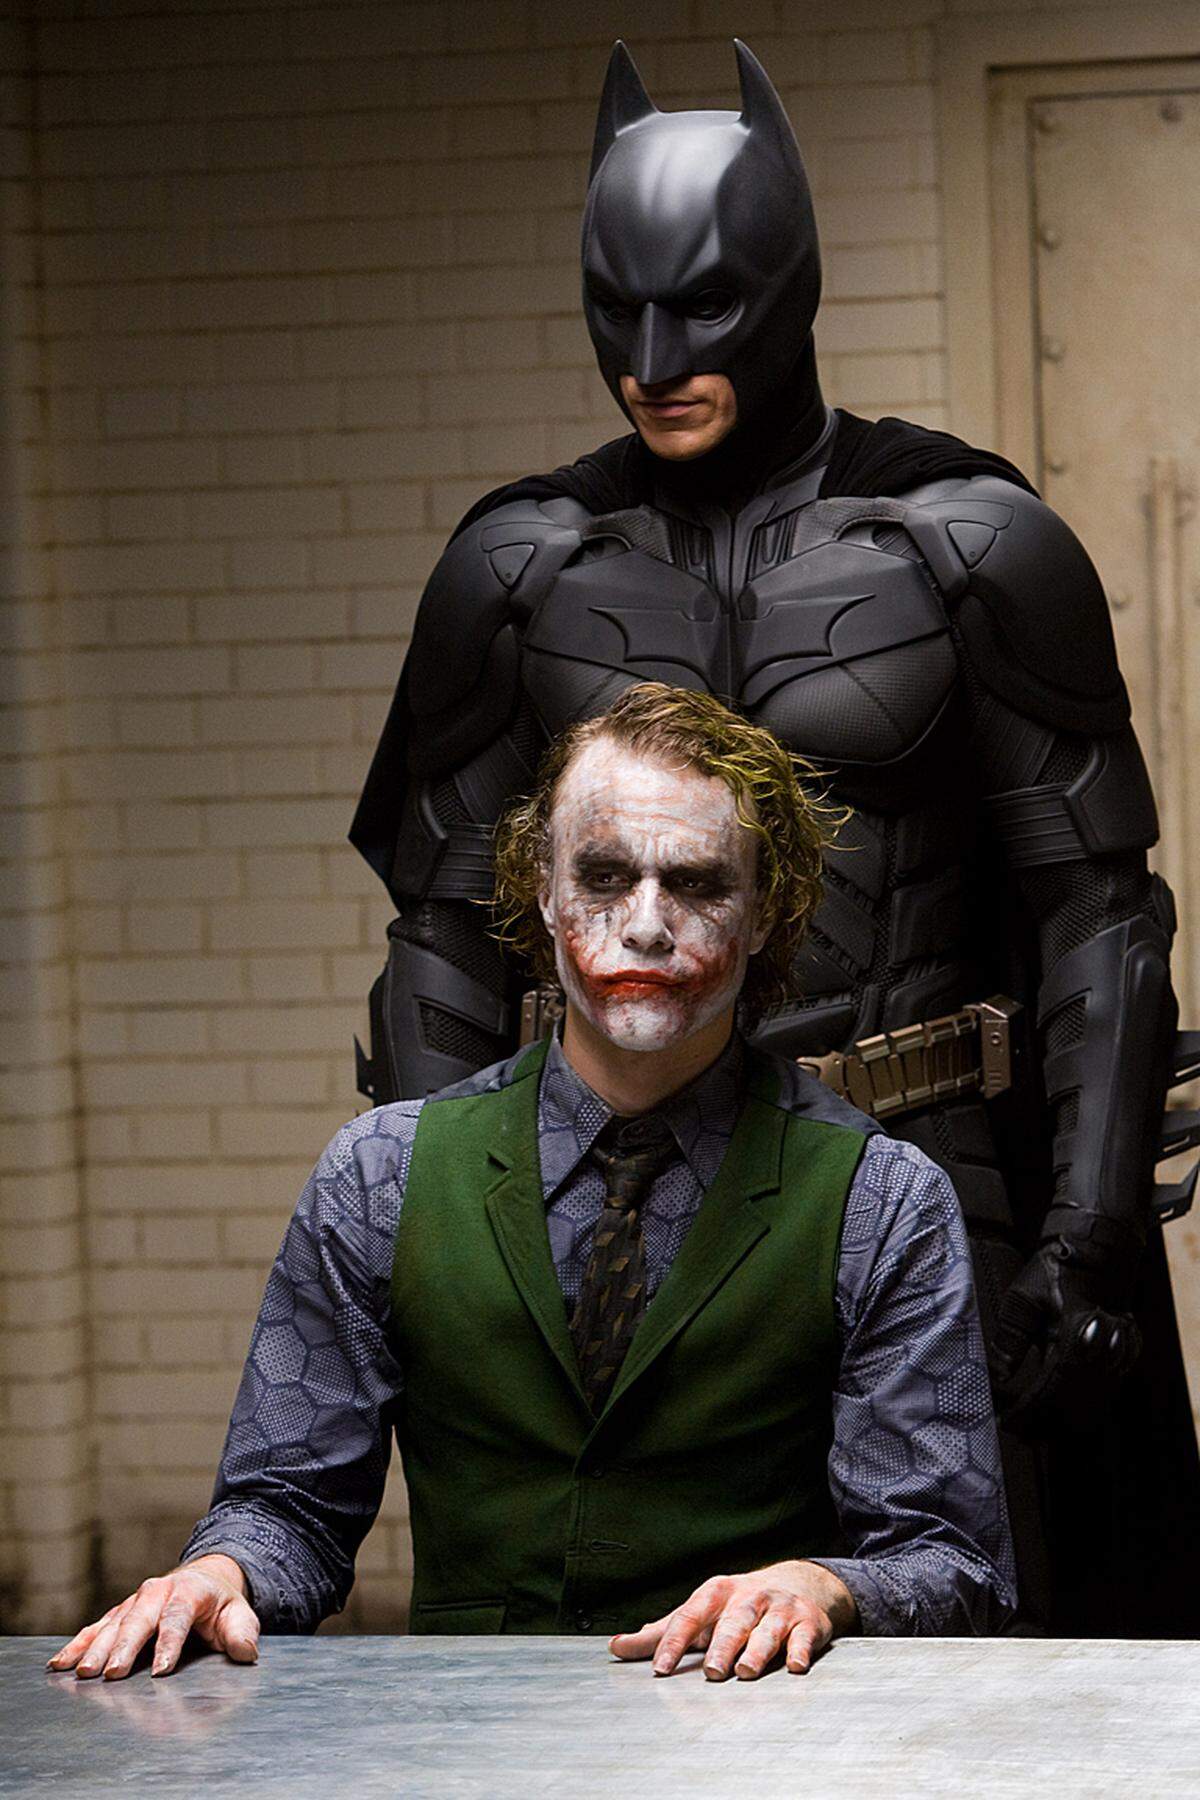 Gleichzeitig überschattete der tragische Tod von Heath Ledger, der den "Joker" mimte, das Filmprojekt. Doch nun zum dritten Teil - "The Dark Knight Rises":